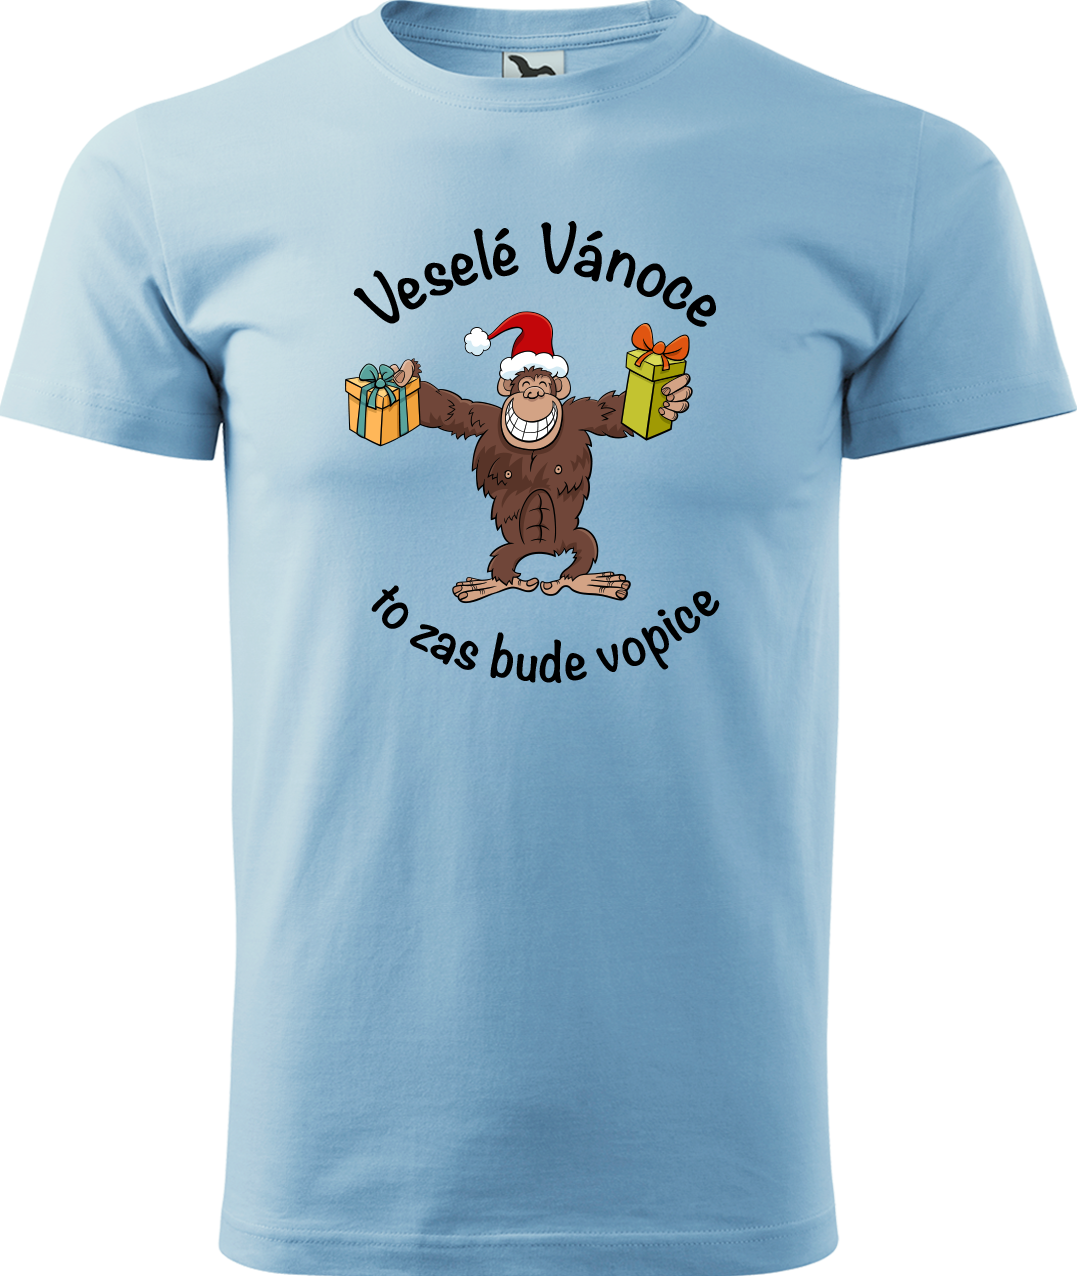 Pánské vánoční tričko - Veselé Vánoce to zas bude vopice (hnědý opičák) Velikost: S, Barva: Nebesky modrá (15)